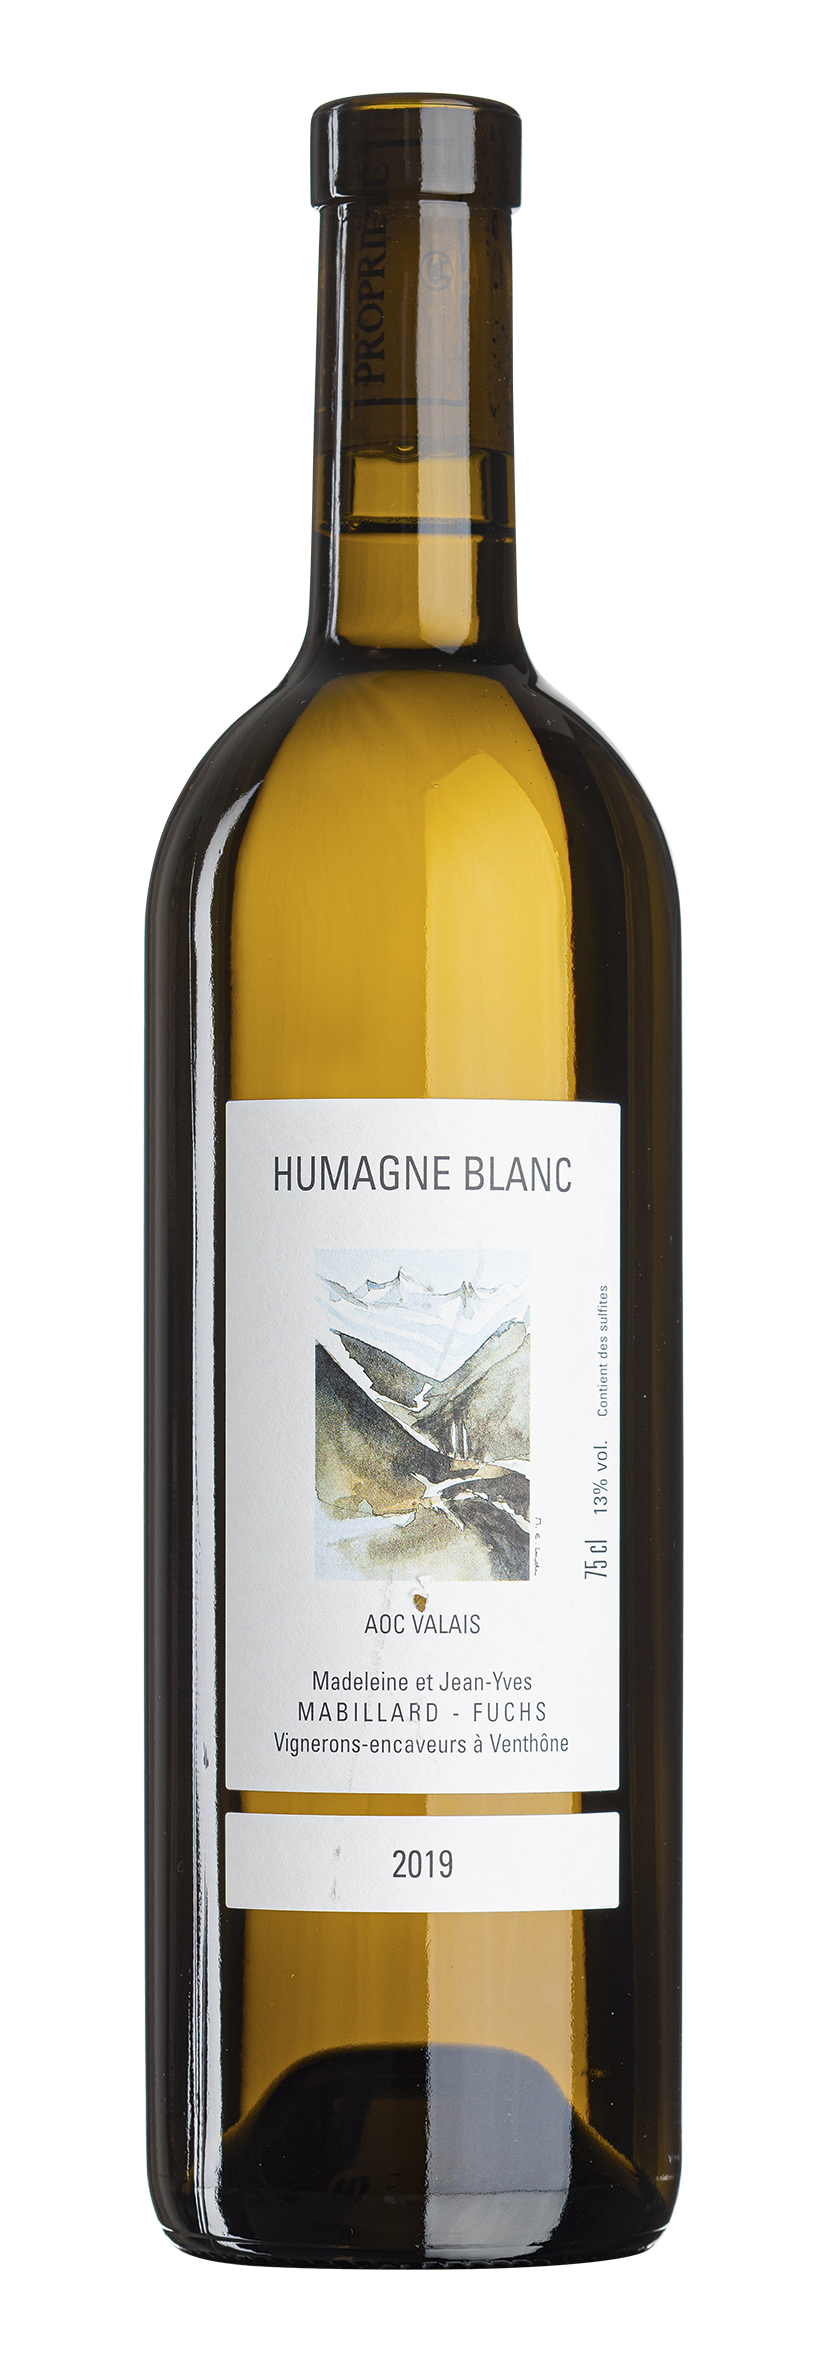 Valais AOC Humagne Blanc 2019